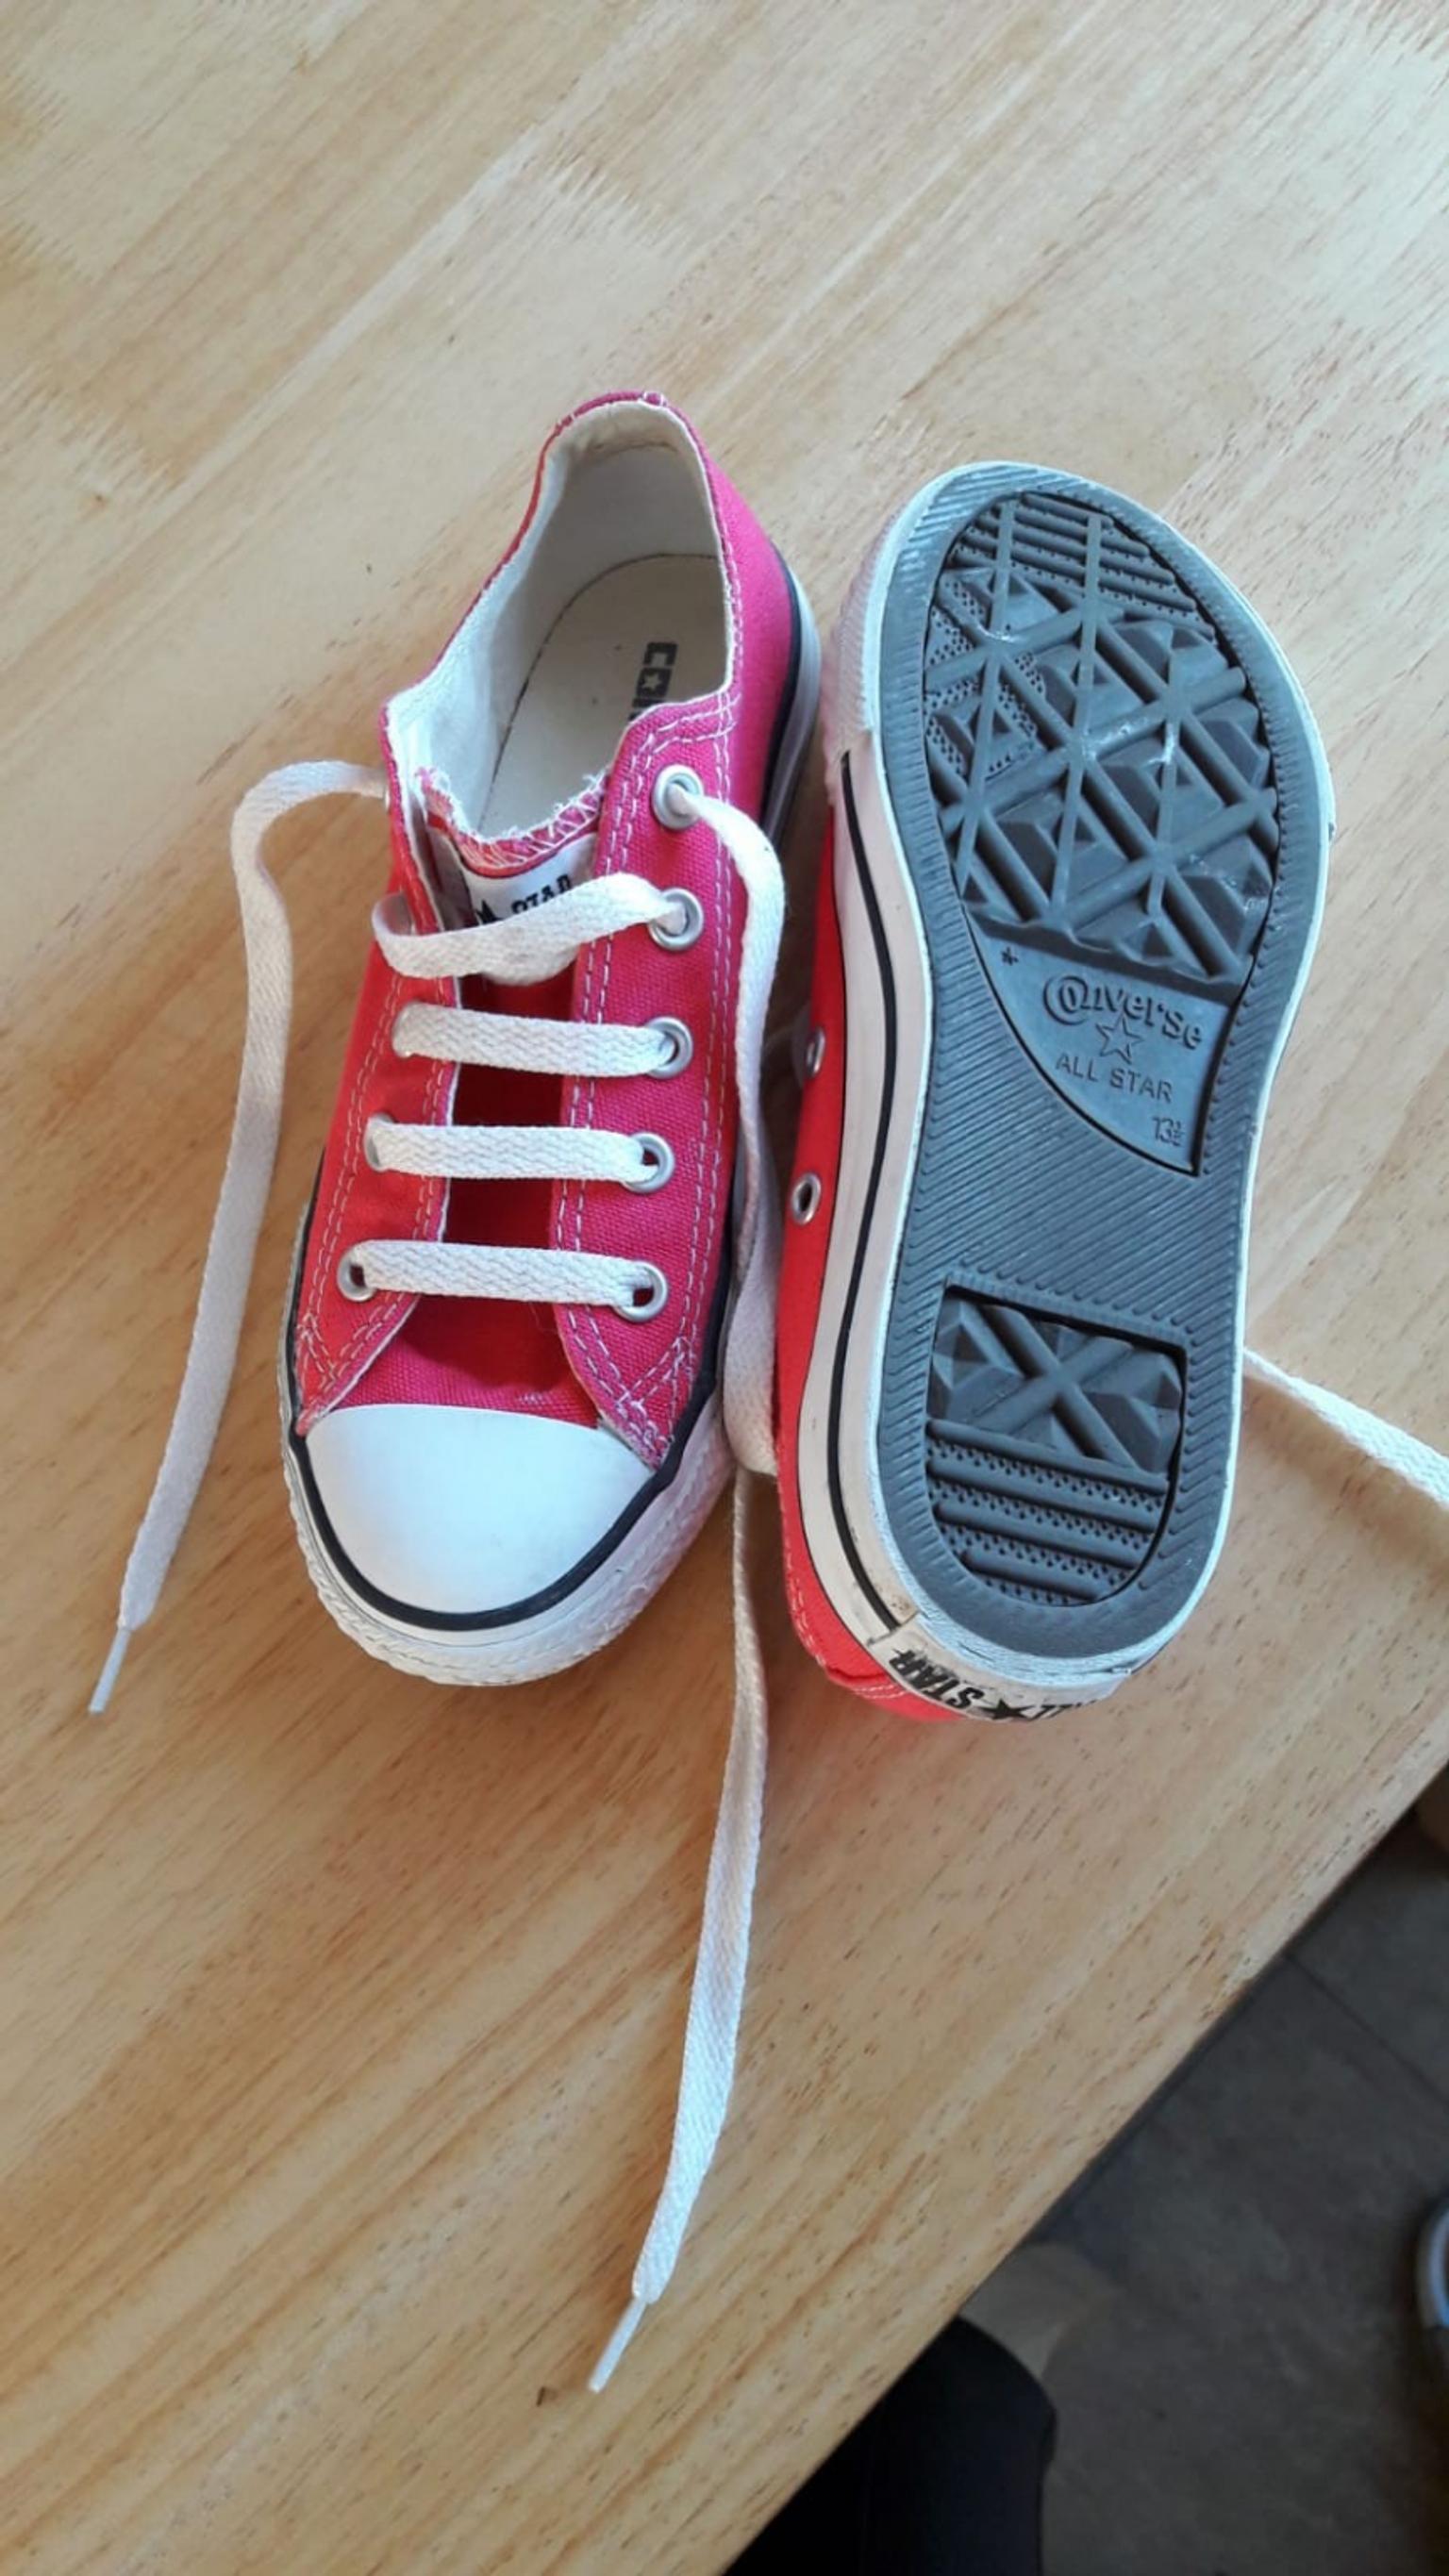 size 1 converse shoes